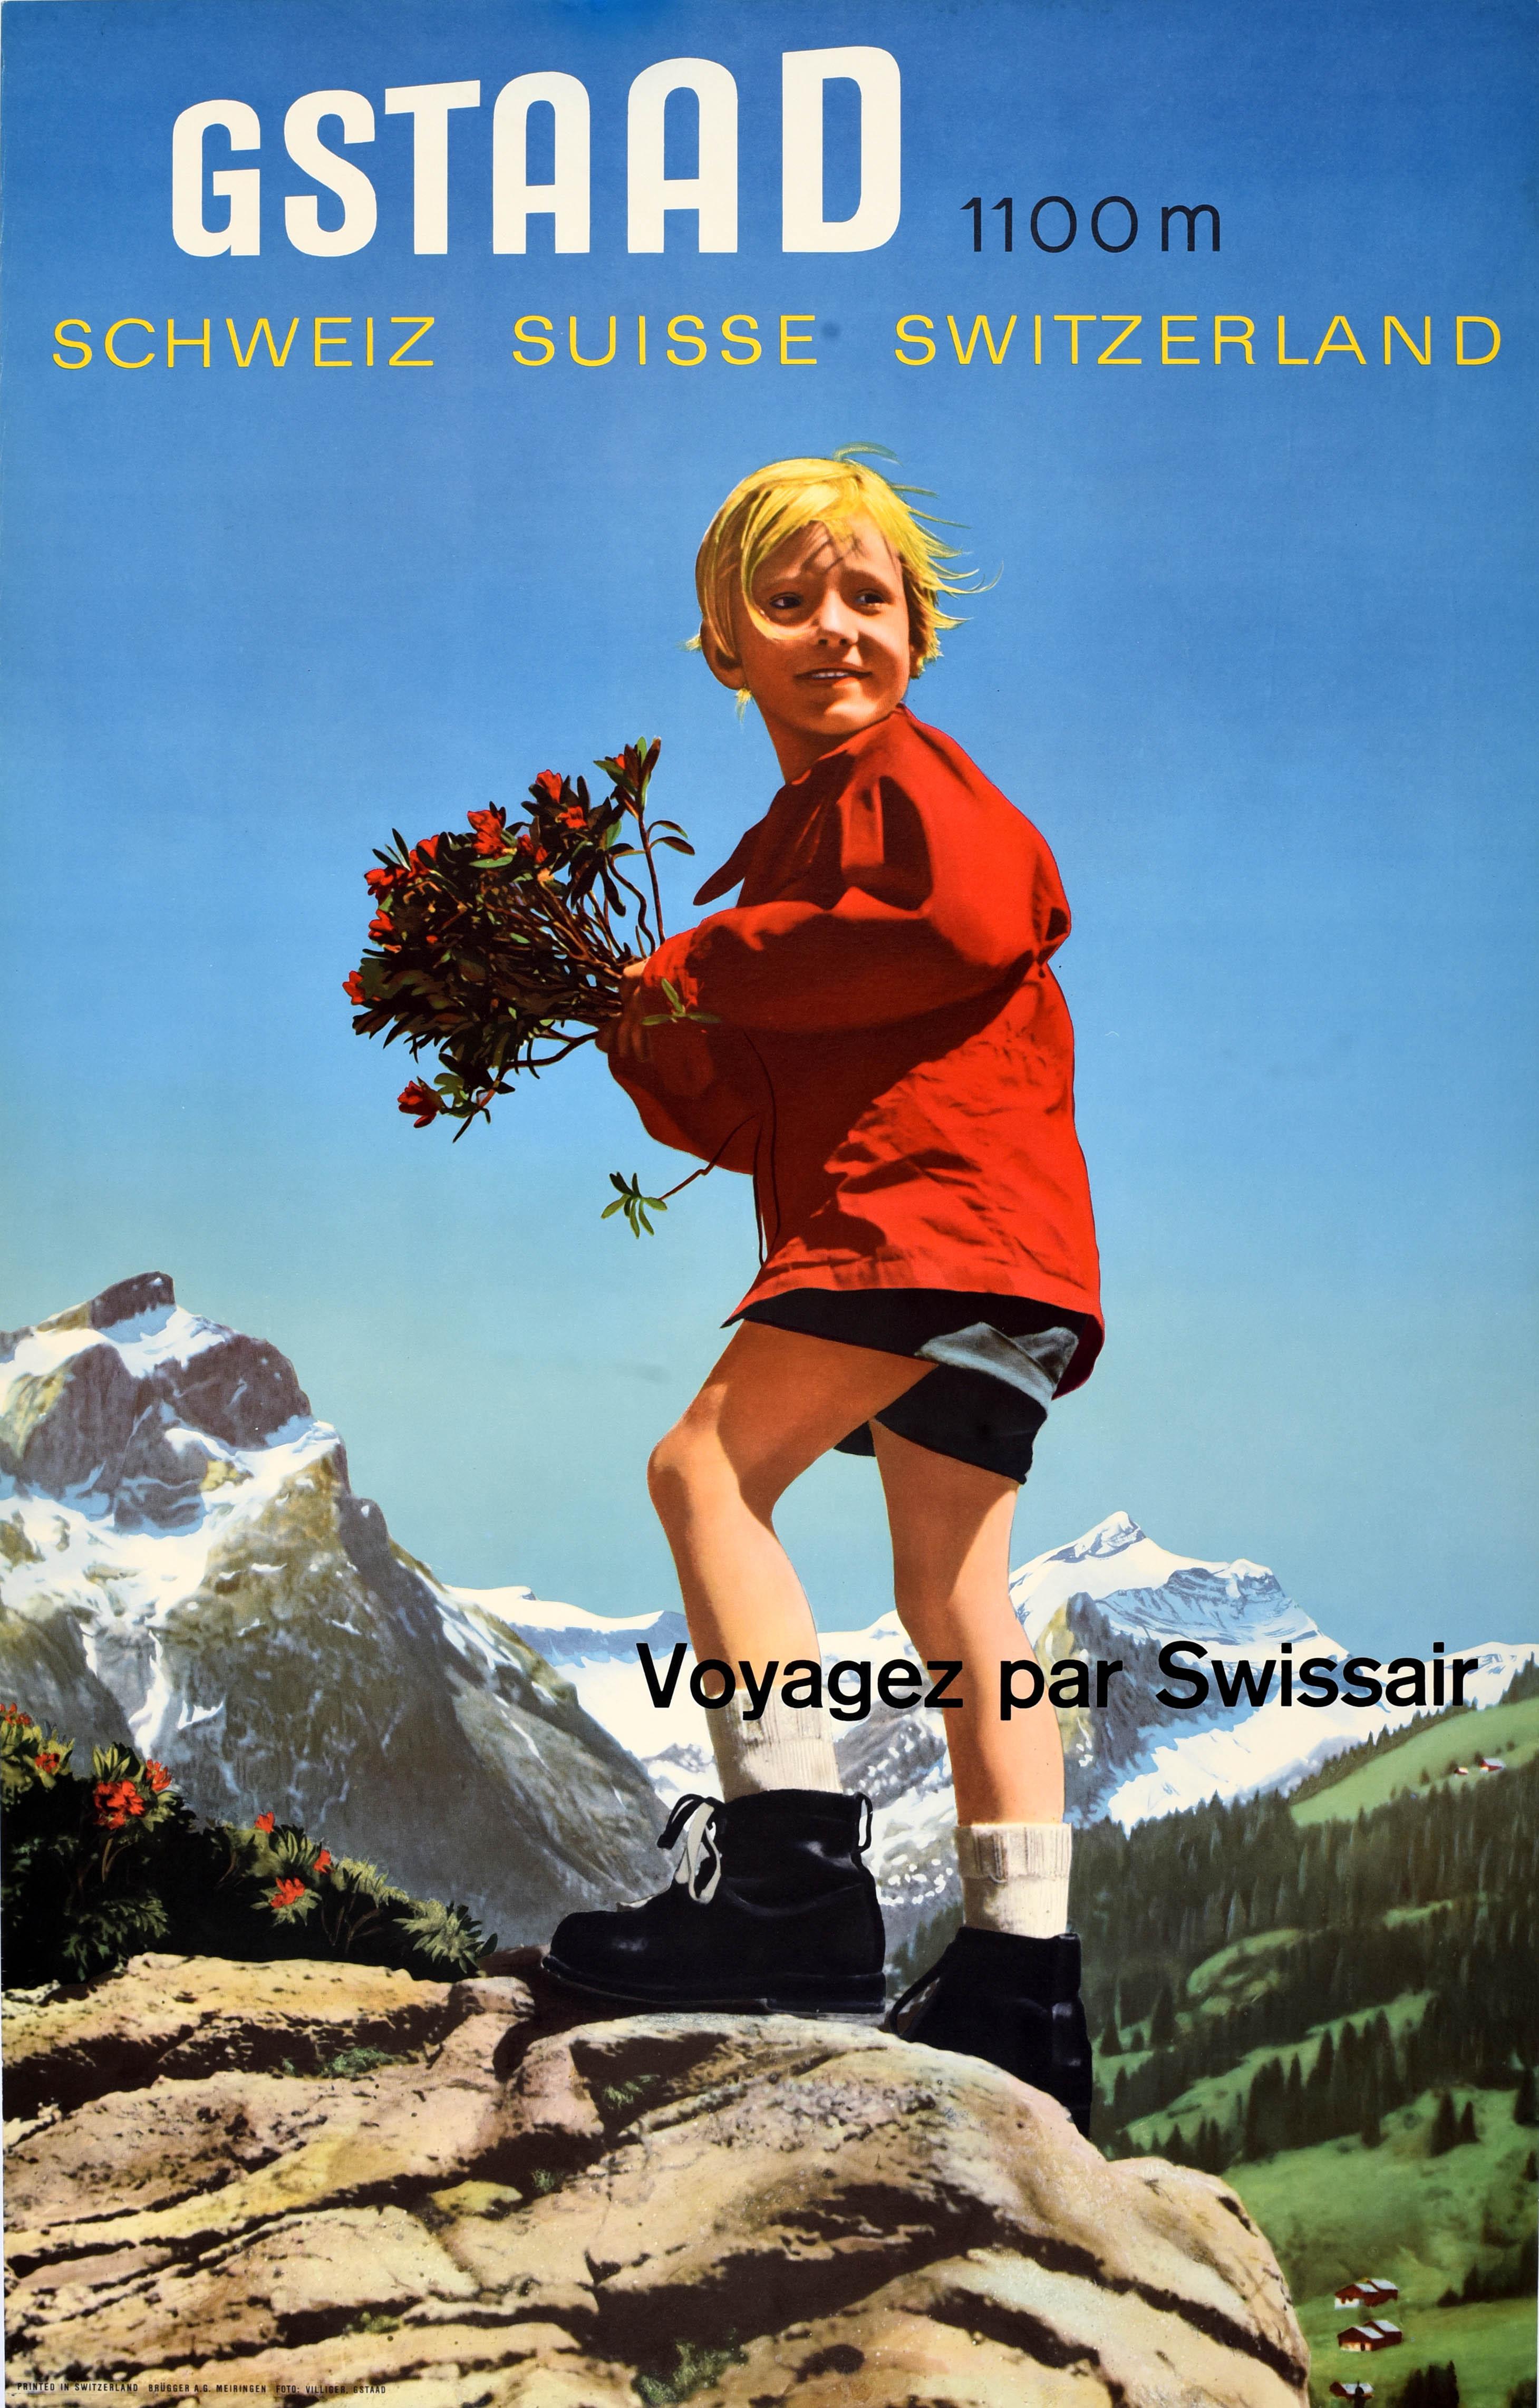 Originales Vintage-Reiseplakat mit Werbung für Gstaad 1100m Suisse Schweiz Voyagez par Swissair Reisen mit der Swissair mit einem Farbfoto von Franz Villiger (1918-1992), das ein lächelndes Kind in rotem Oberteil, Shorts und Wanderschuhen zeigt, das